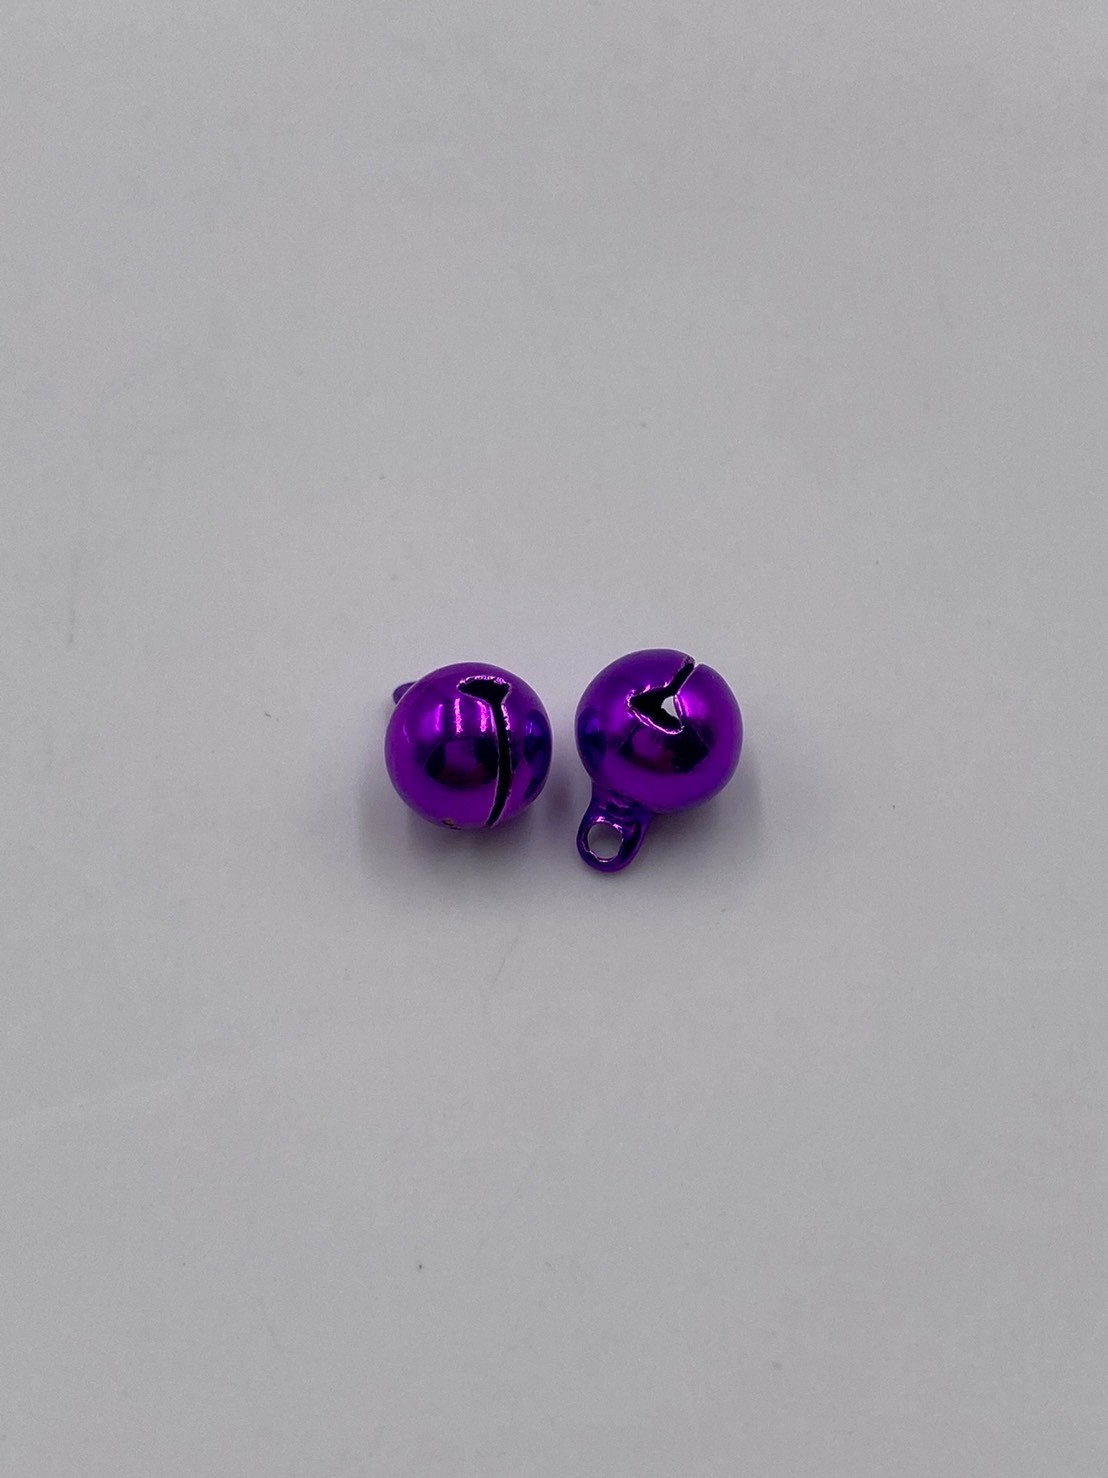 8.0銅鈴鐺(一字) 紫色